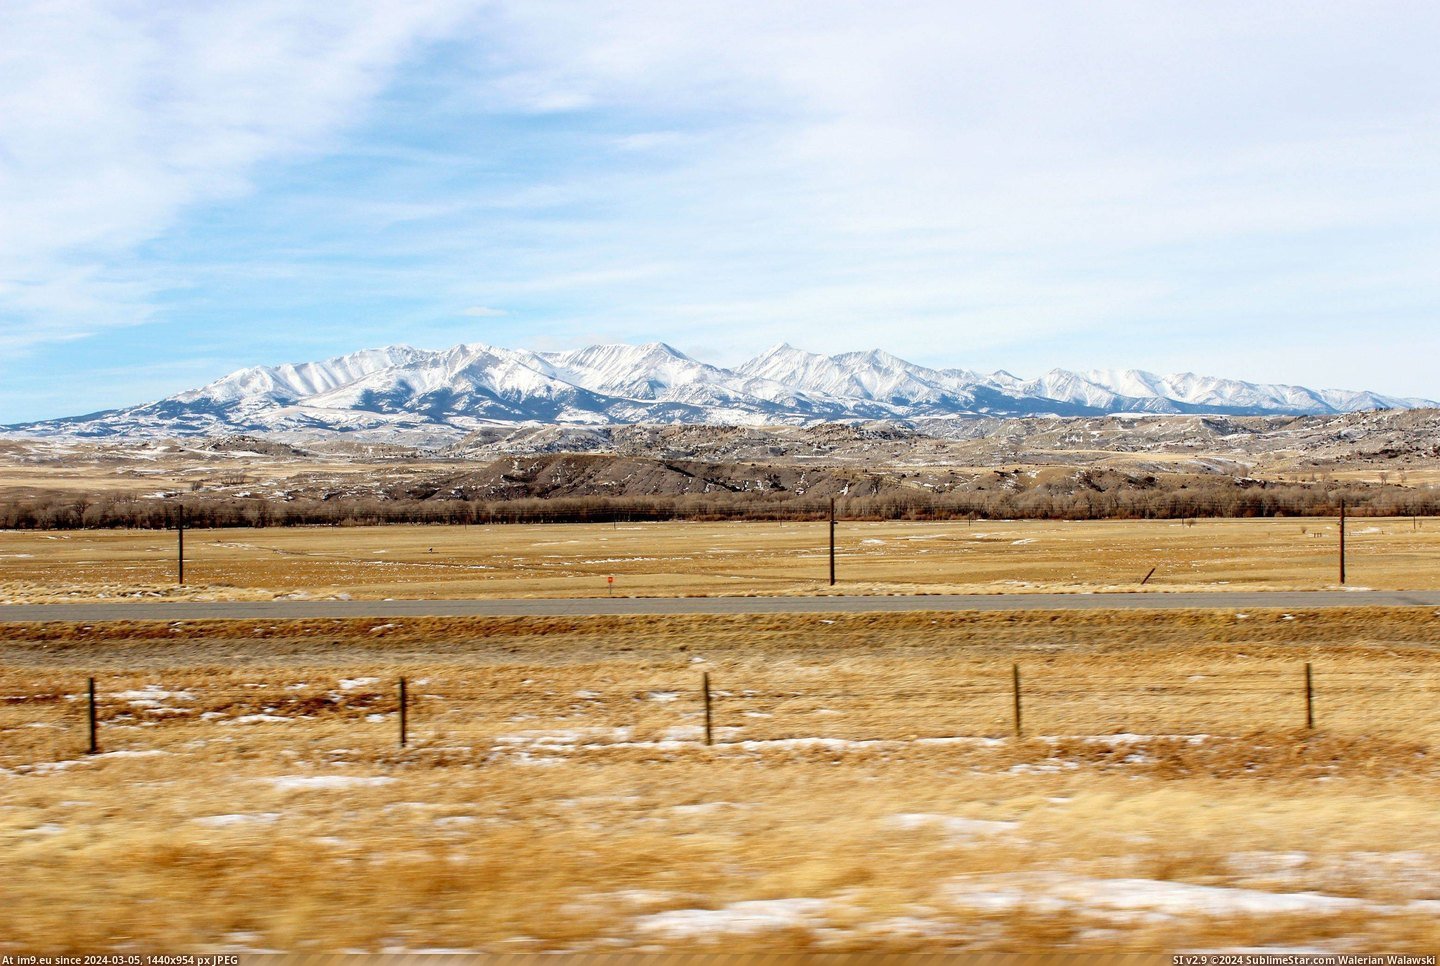 #Crazy #Montana #Mountains [Earthporn] Crazy Mountains - Montana [5184 × 3456] Pic. (Bild von album My r/EARTHPORN favs))